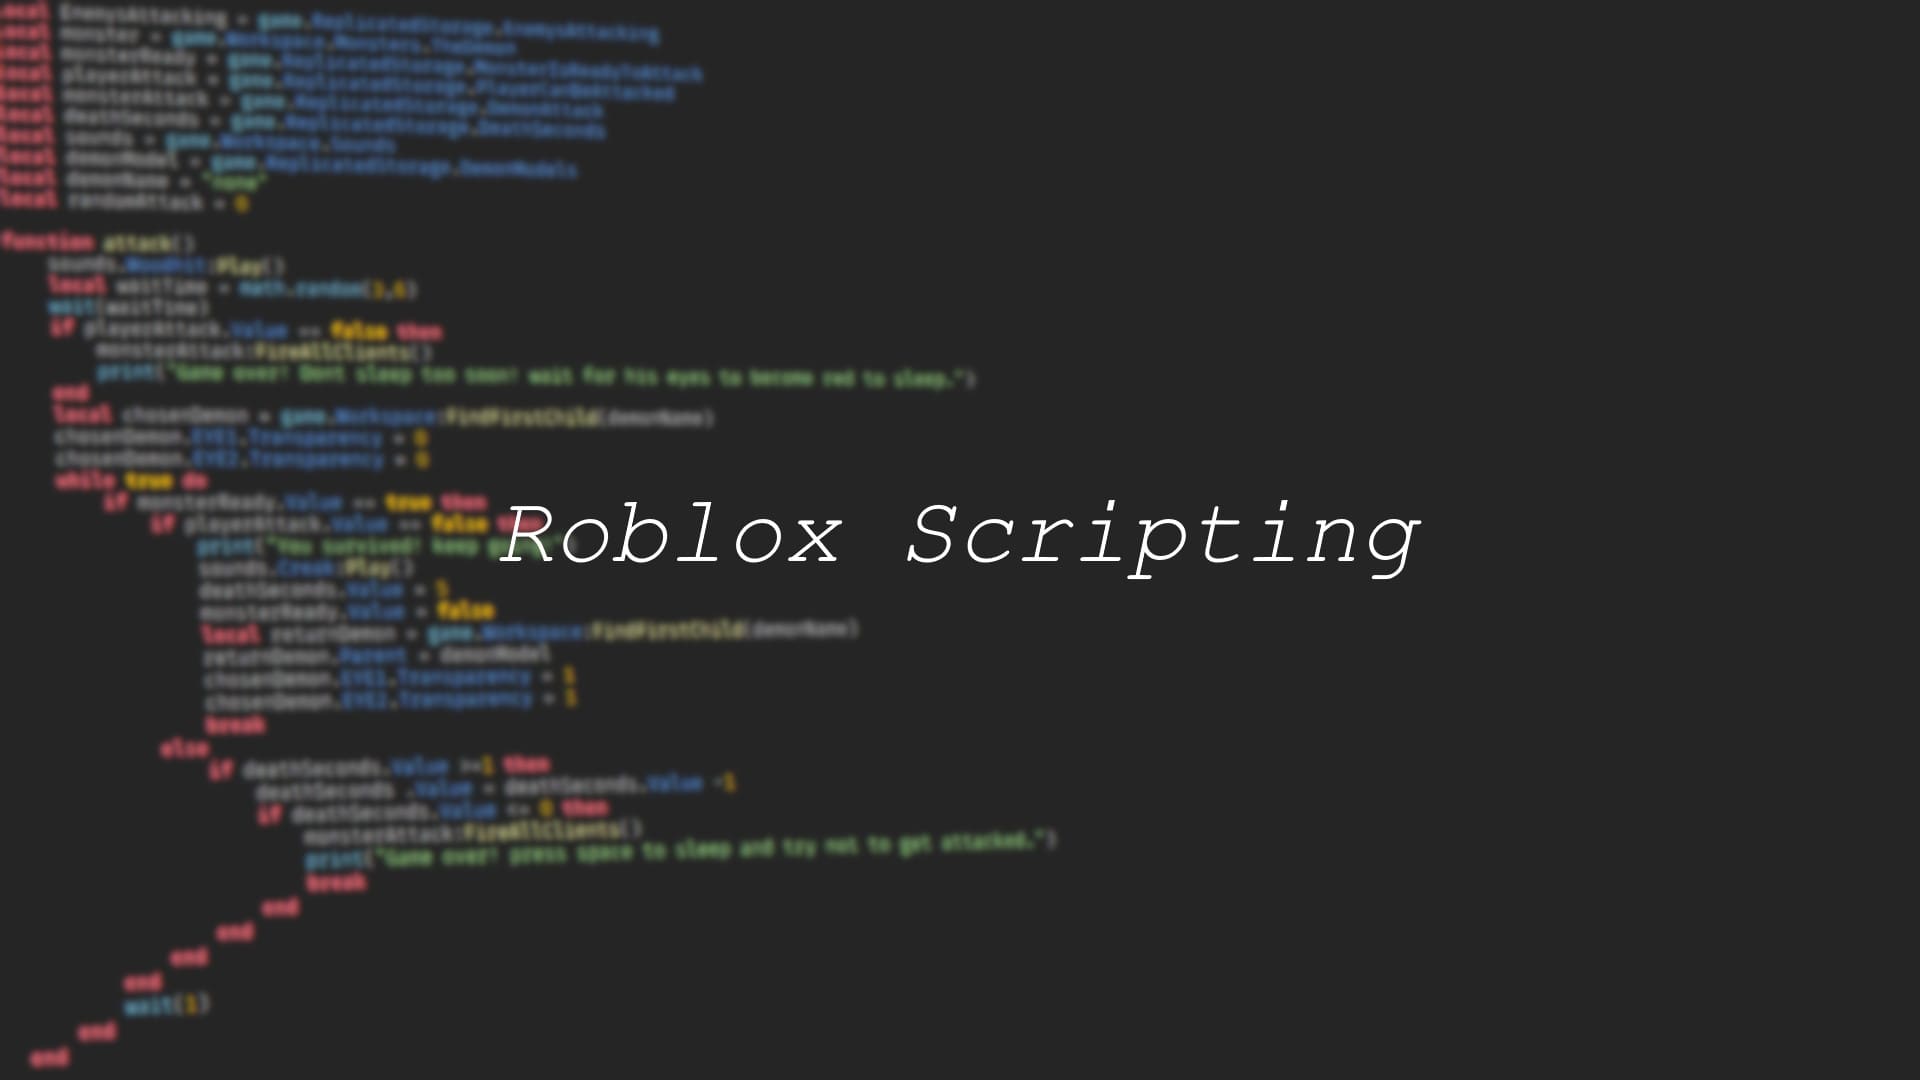 3008 script - Roblox-Scripter